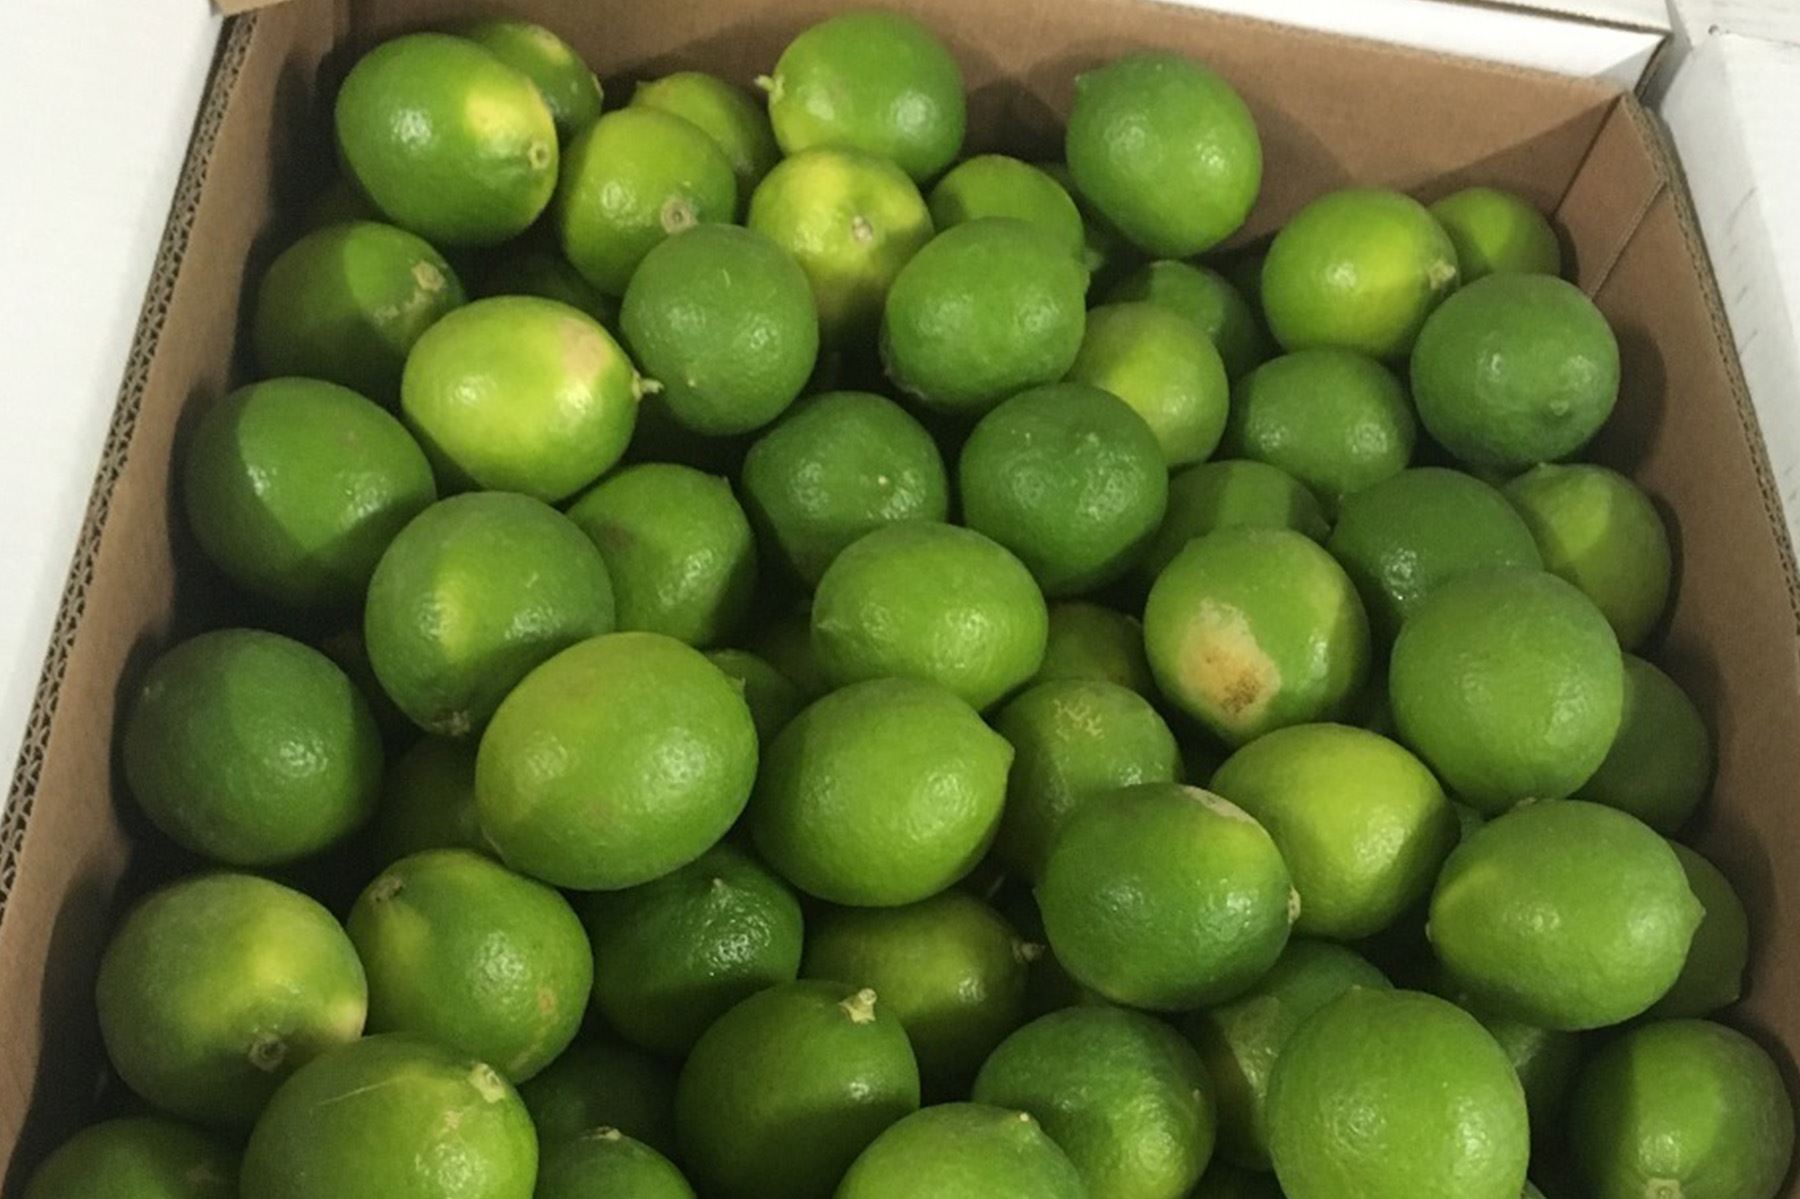 Investigadores de la Universidad Nacional Agraria La Molina elaborarán un recubrimiento hecho a base de residuos de mango, lúcuma, uva, palta y cacao, que se aplicará sobre los limones y mandarinas.